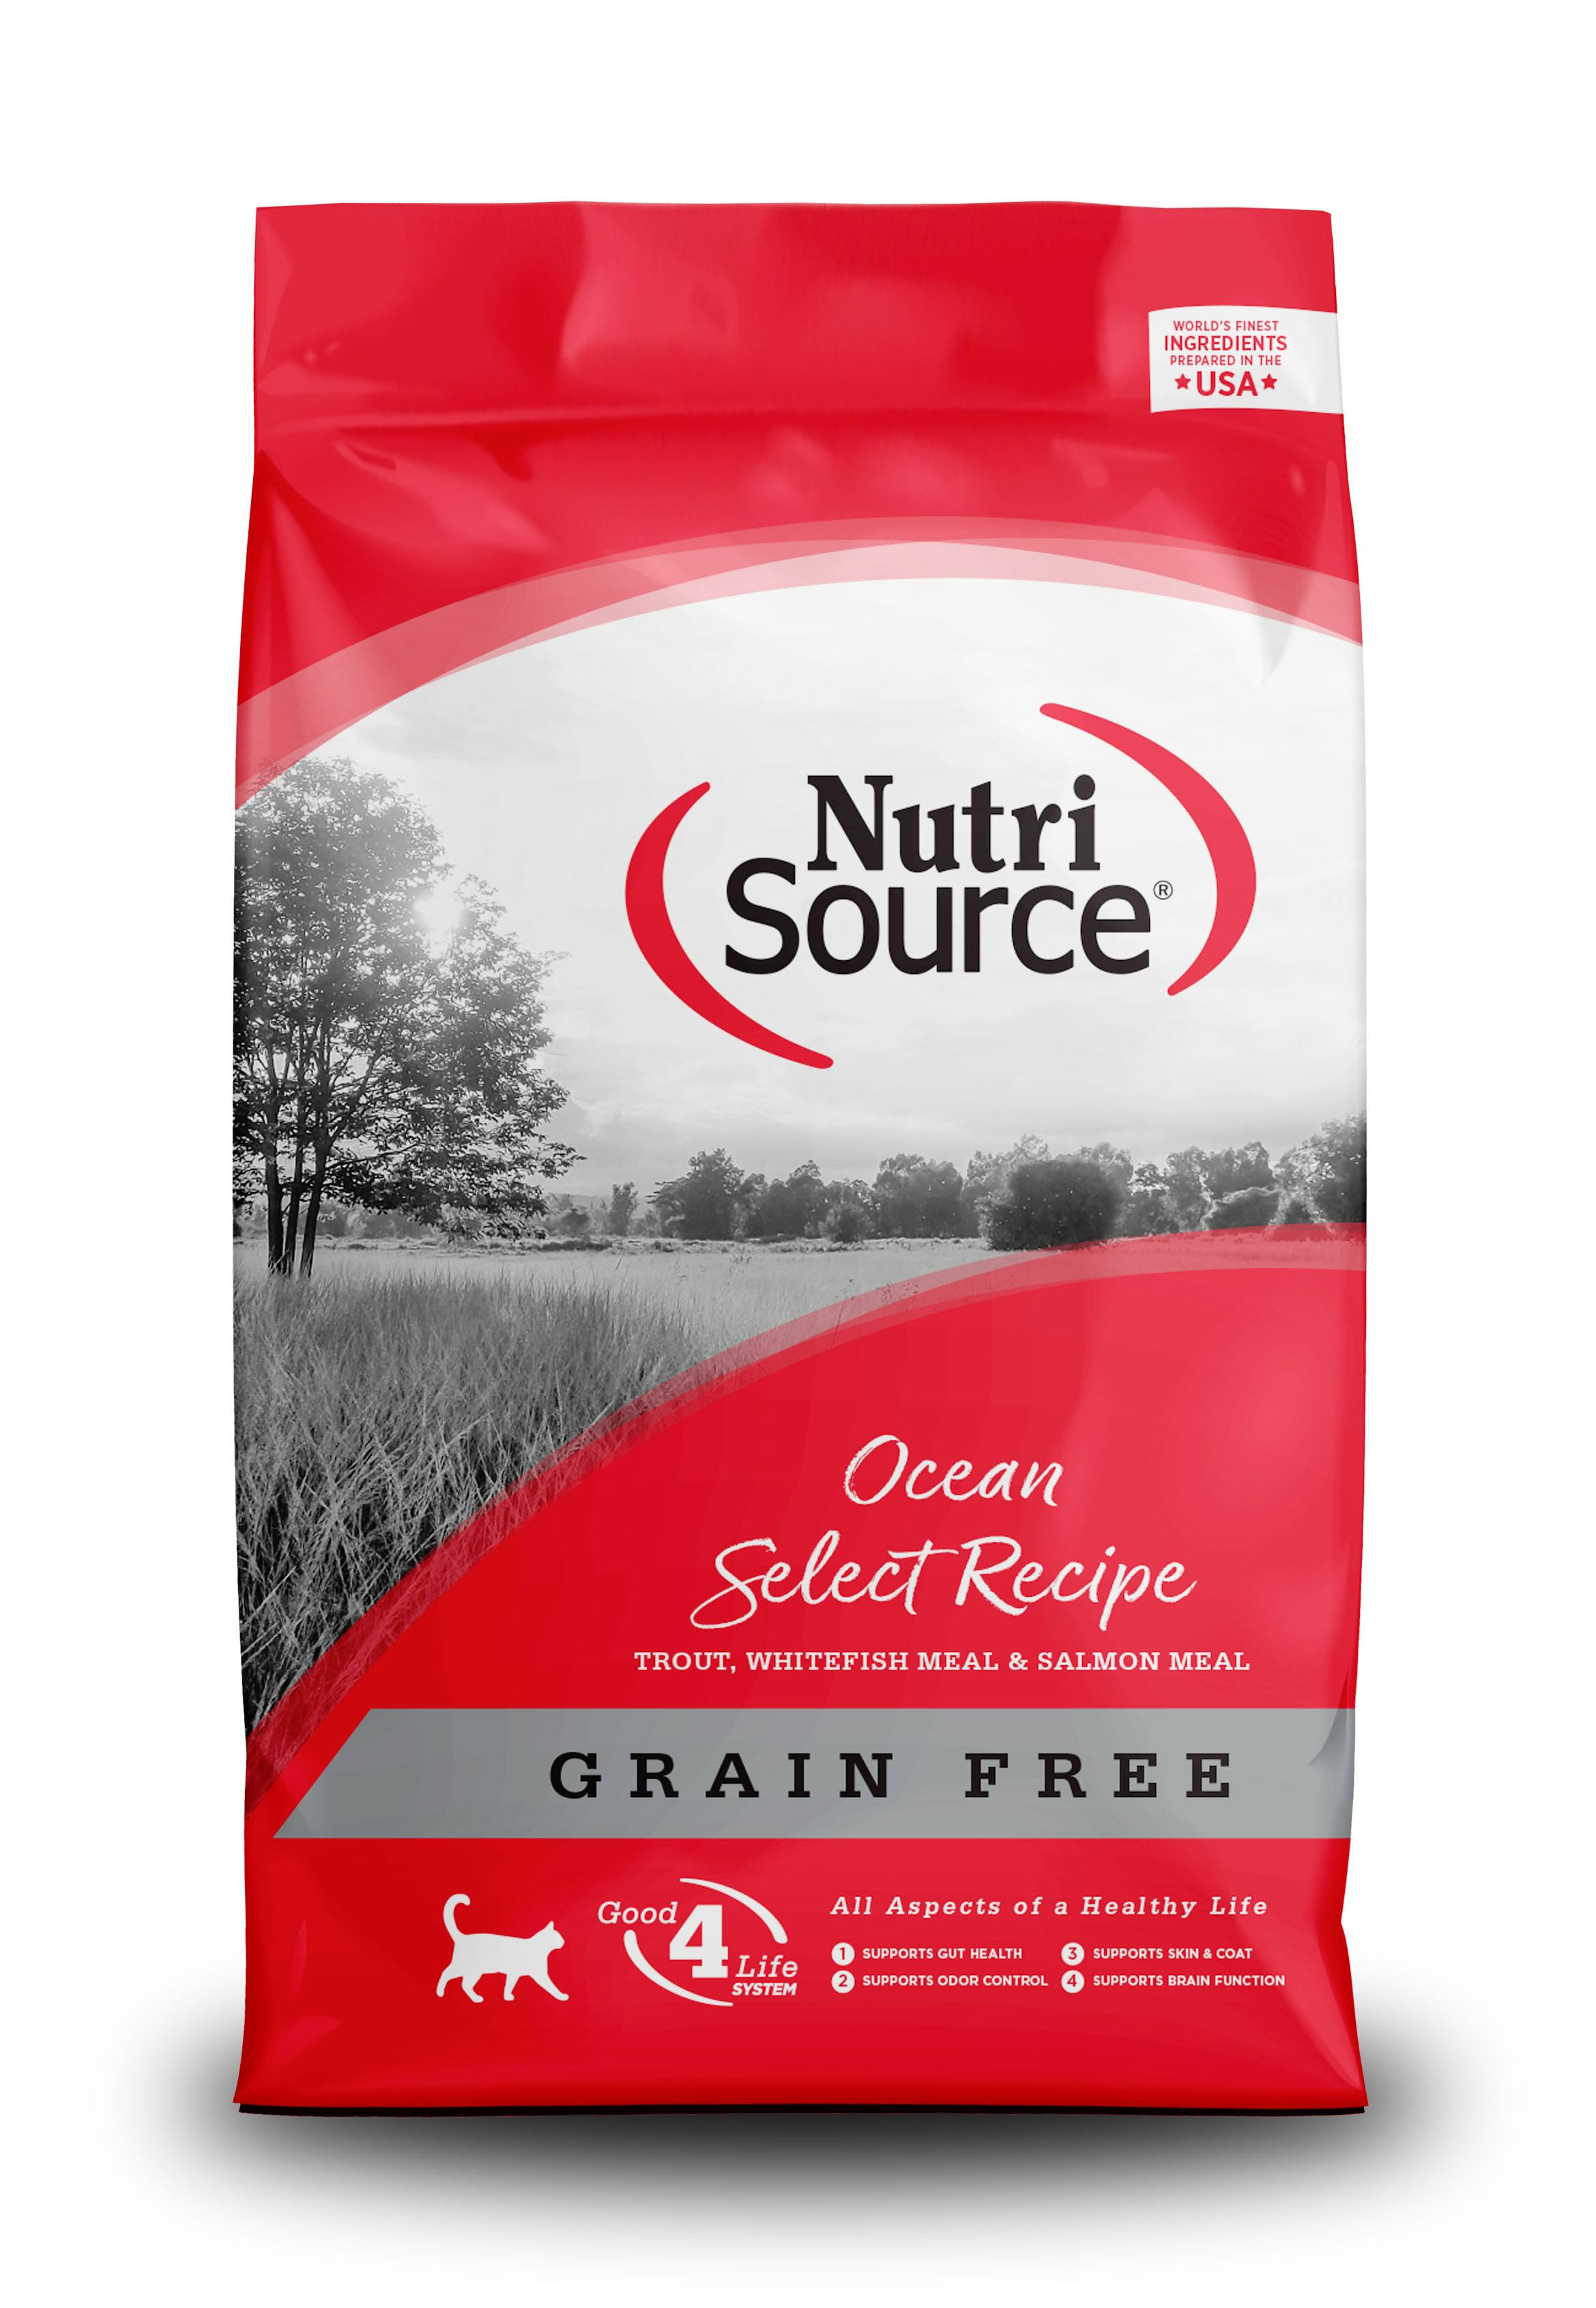 NutriSource Grain Free Ocean Select Entree Dry Cat Food, 2.2-lb